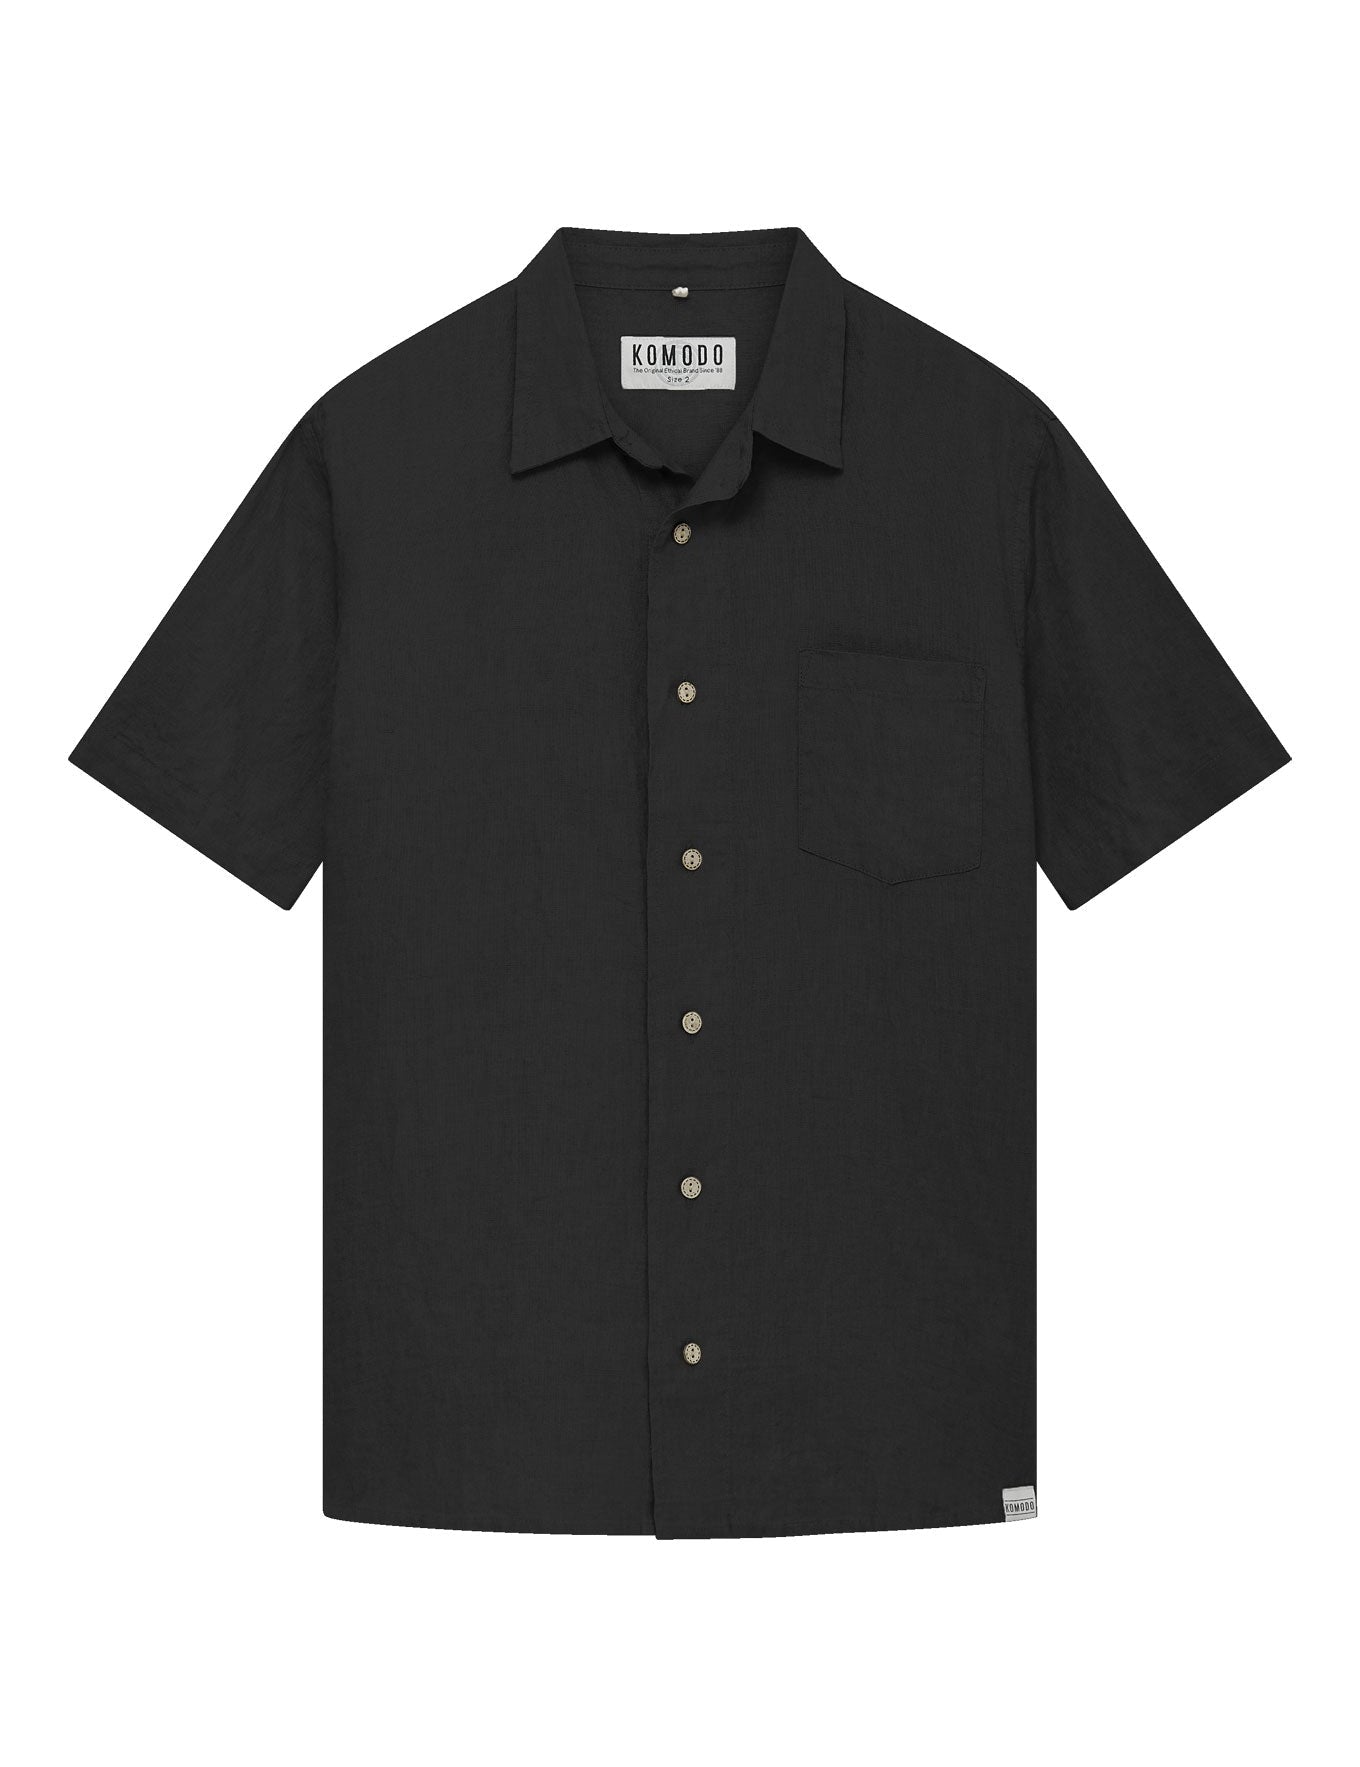 C1-L-58-Dingwalls-shirt---black_3b79c899-7d77-4b0f-a75f-587f563e0c70.jpg